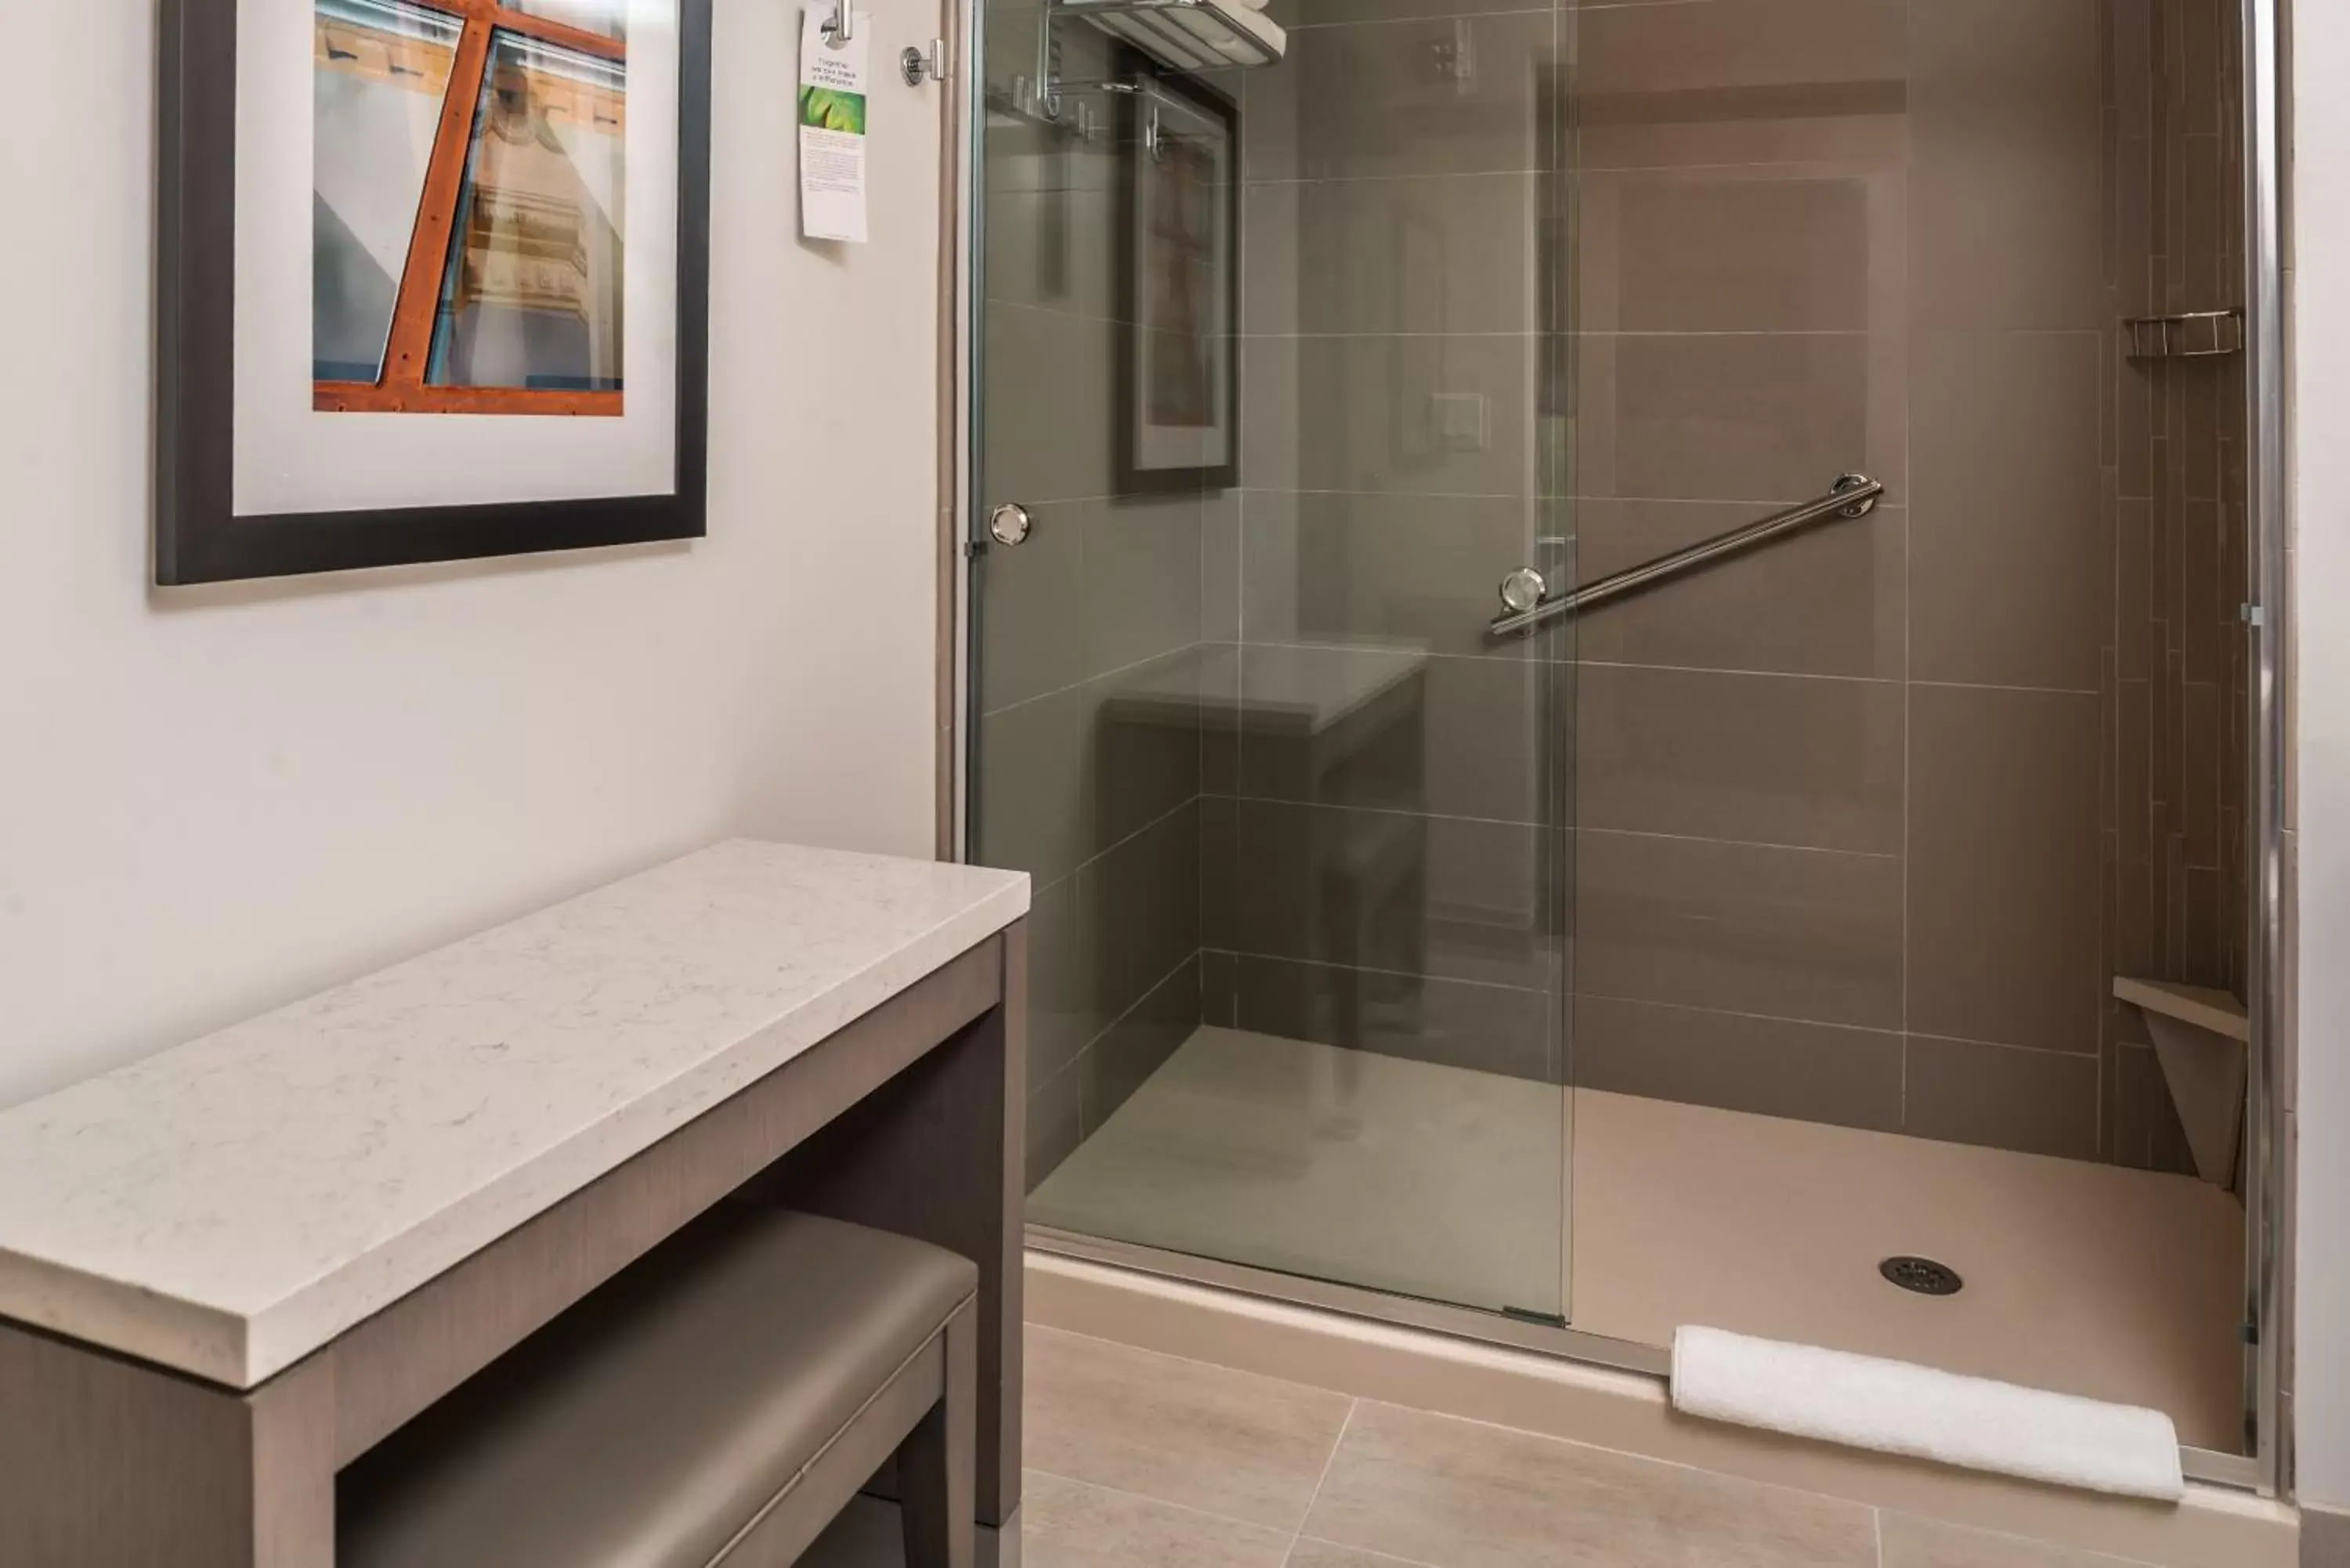 Shower, Bathroom in Hyatt House Raleigh/Rdu/Brier Creek